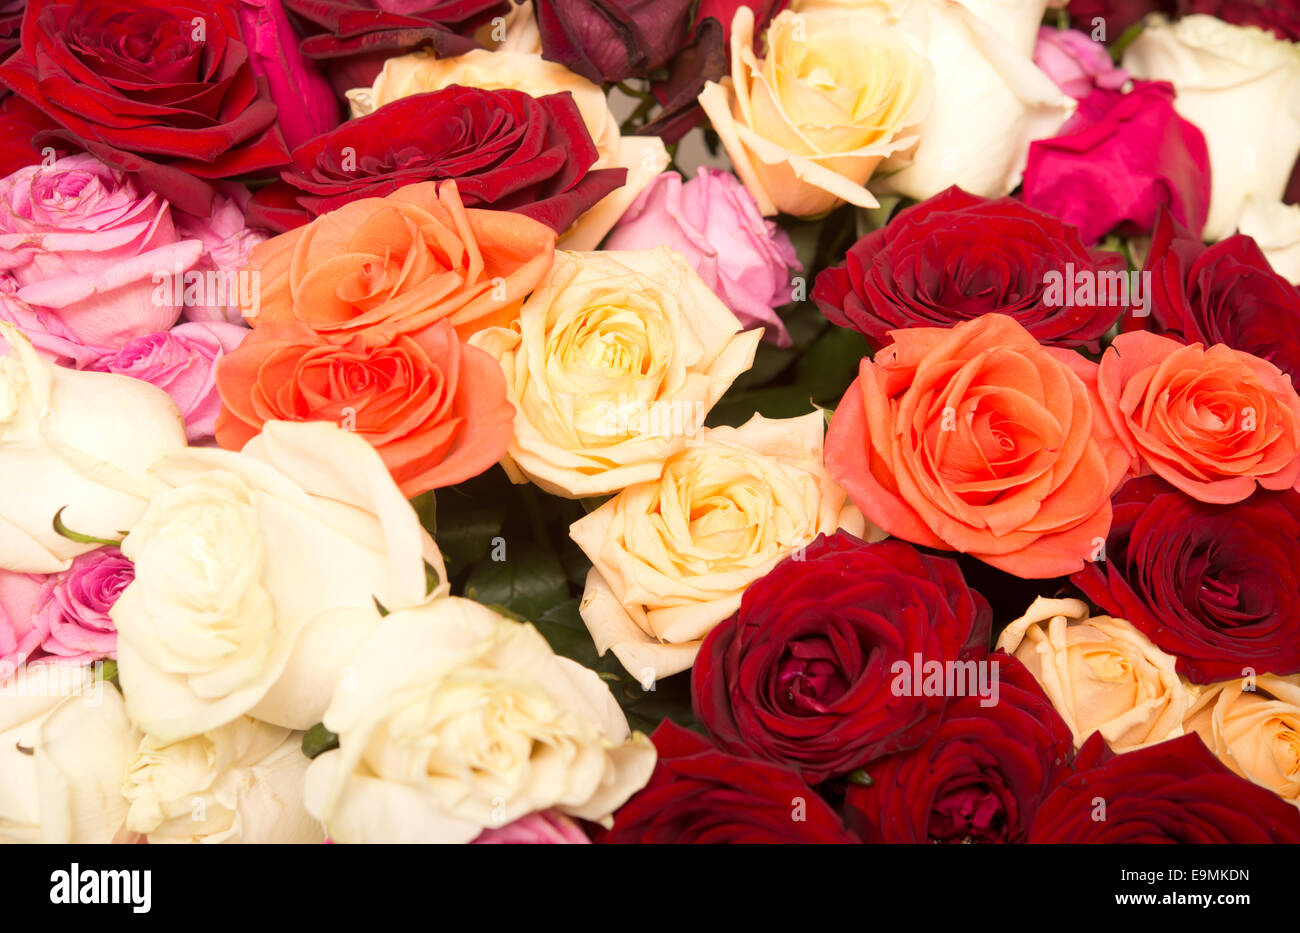 rose background Stock Photo